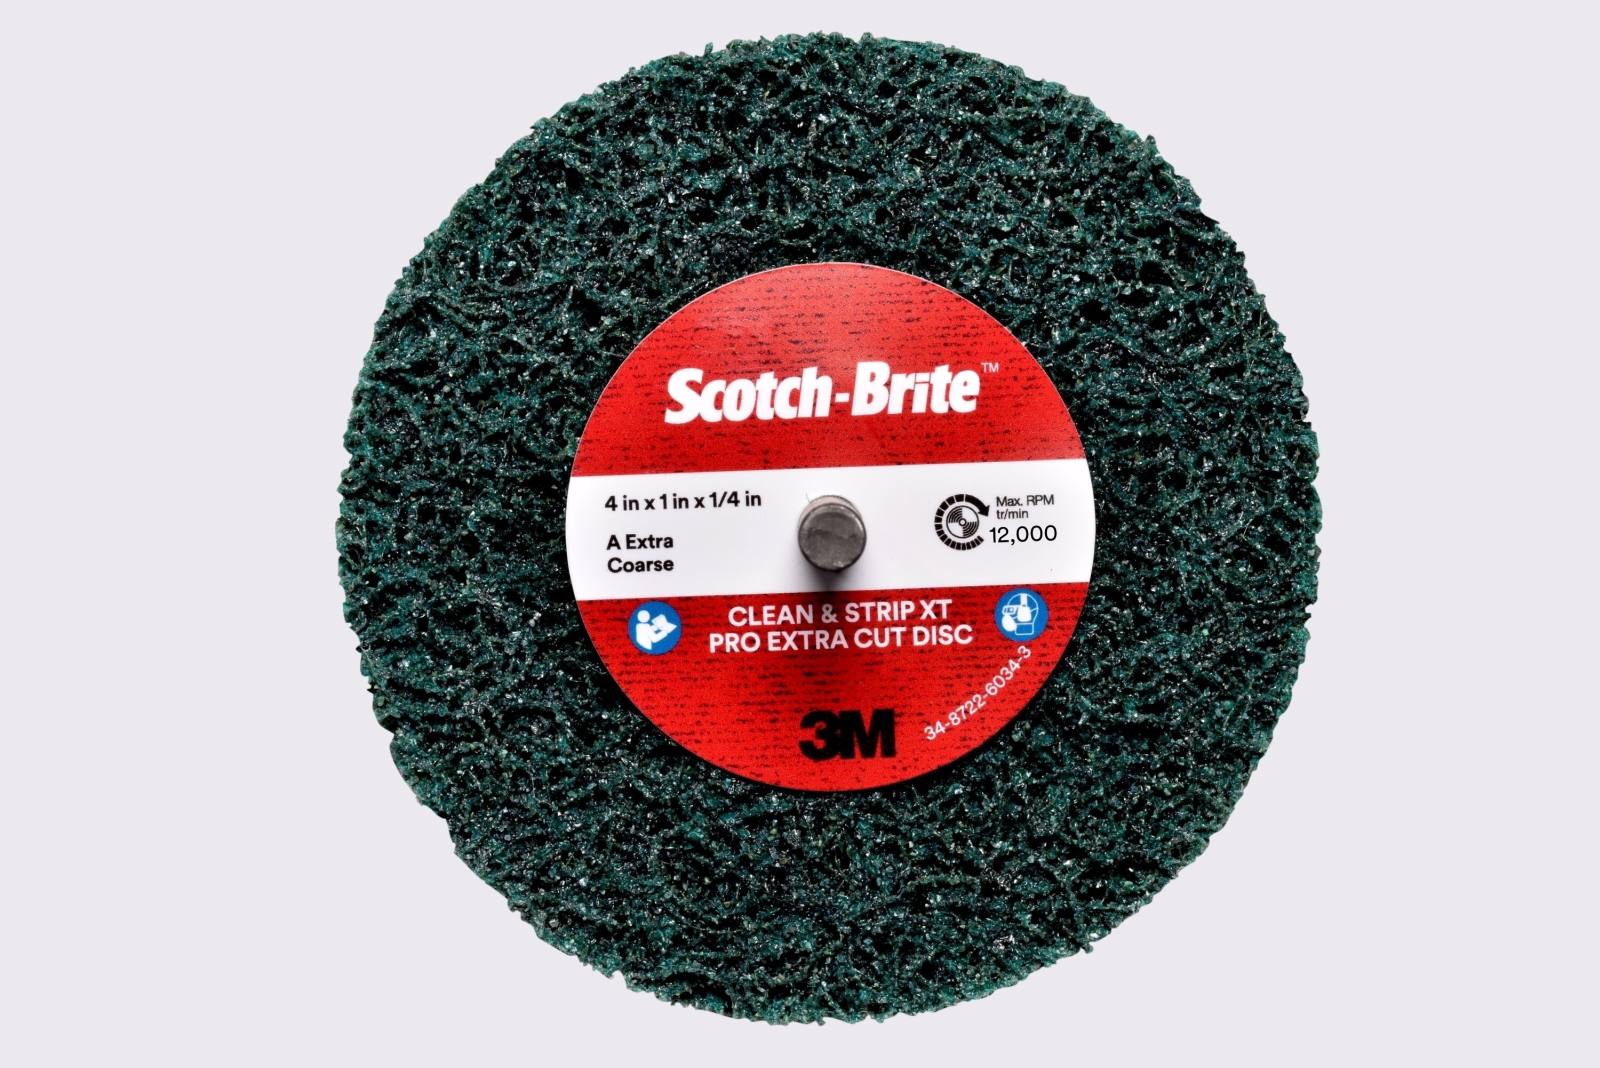 3M Scotch-Brite disco per pulizia grossolana XT-ZS Pro Extra Cut, 100 mm, 25 mm, 6 mm, A, extra grossolano